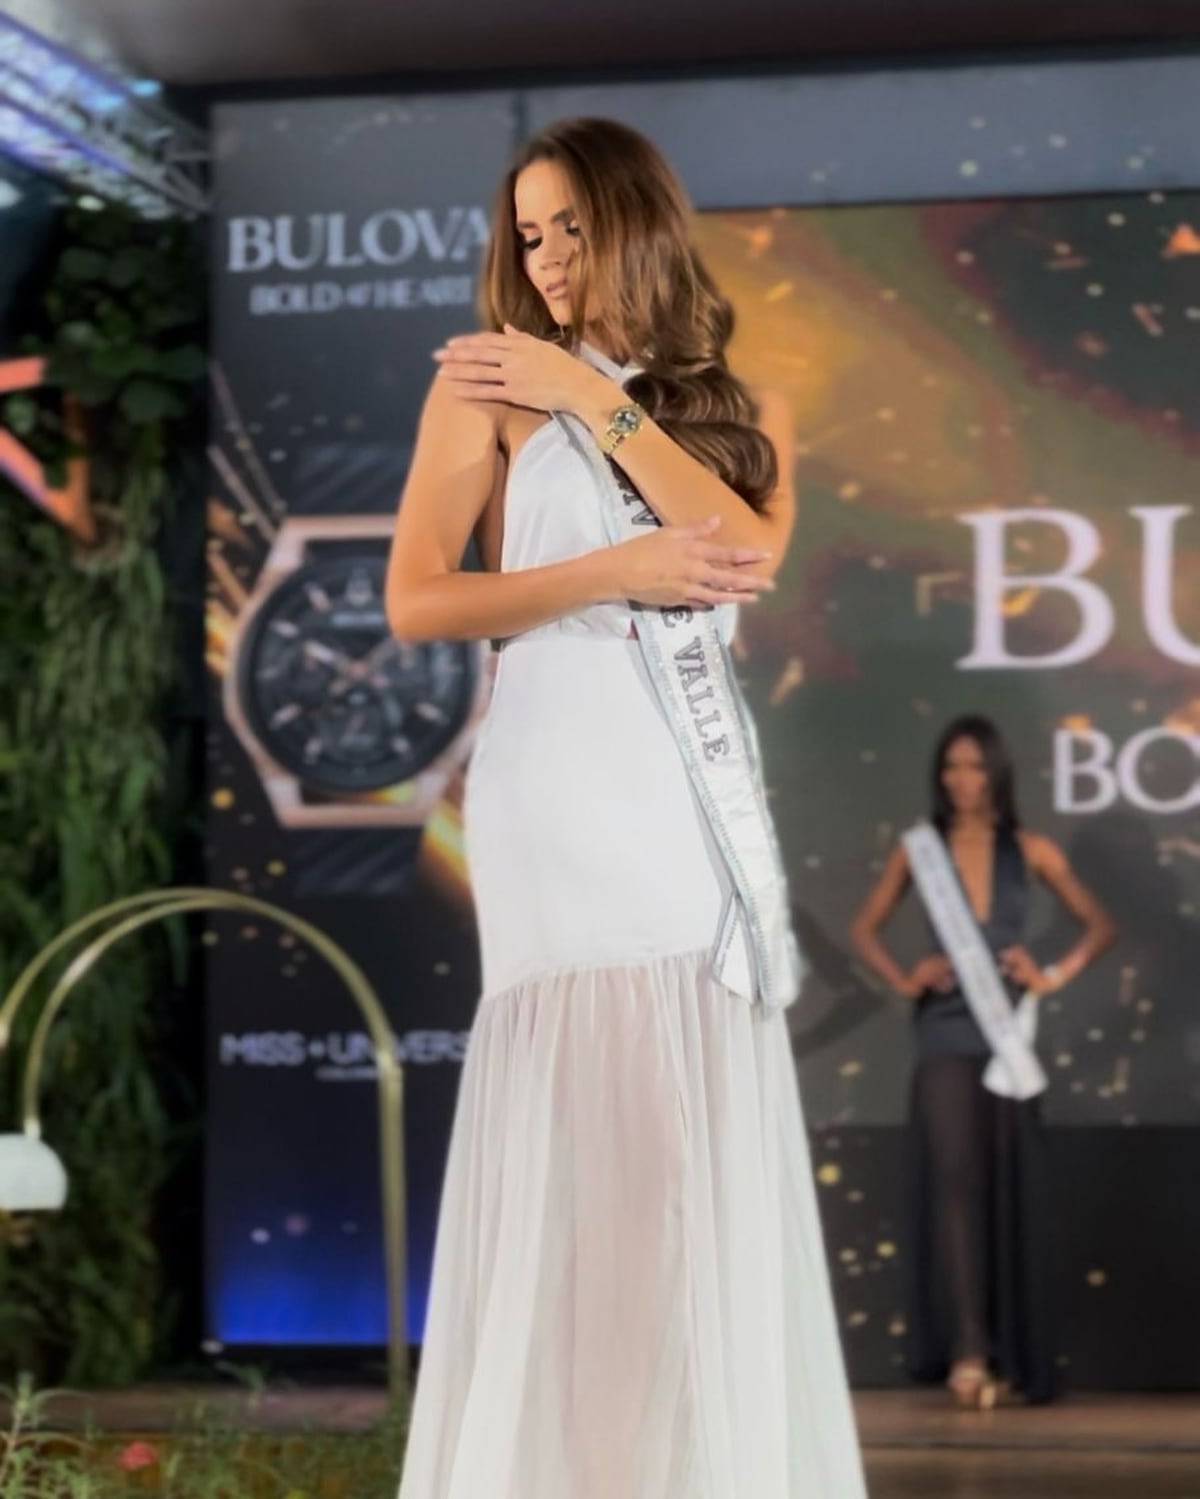 ‘Me refugié en la comida... Subí de peso impresionantemente’, la historia de Daniela Toloza, la nueva Miss Universo Colombia